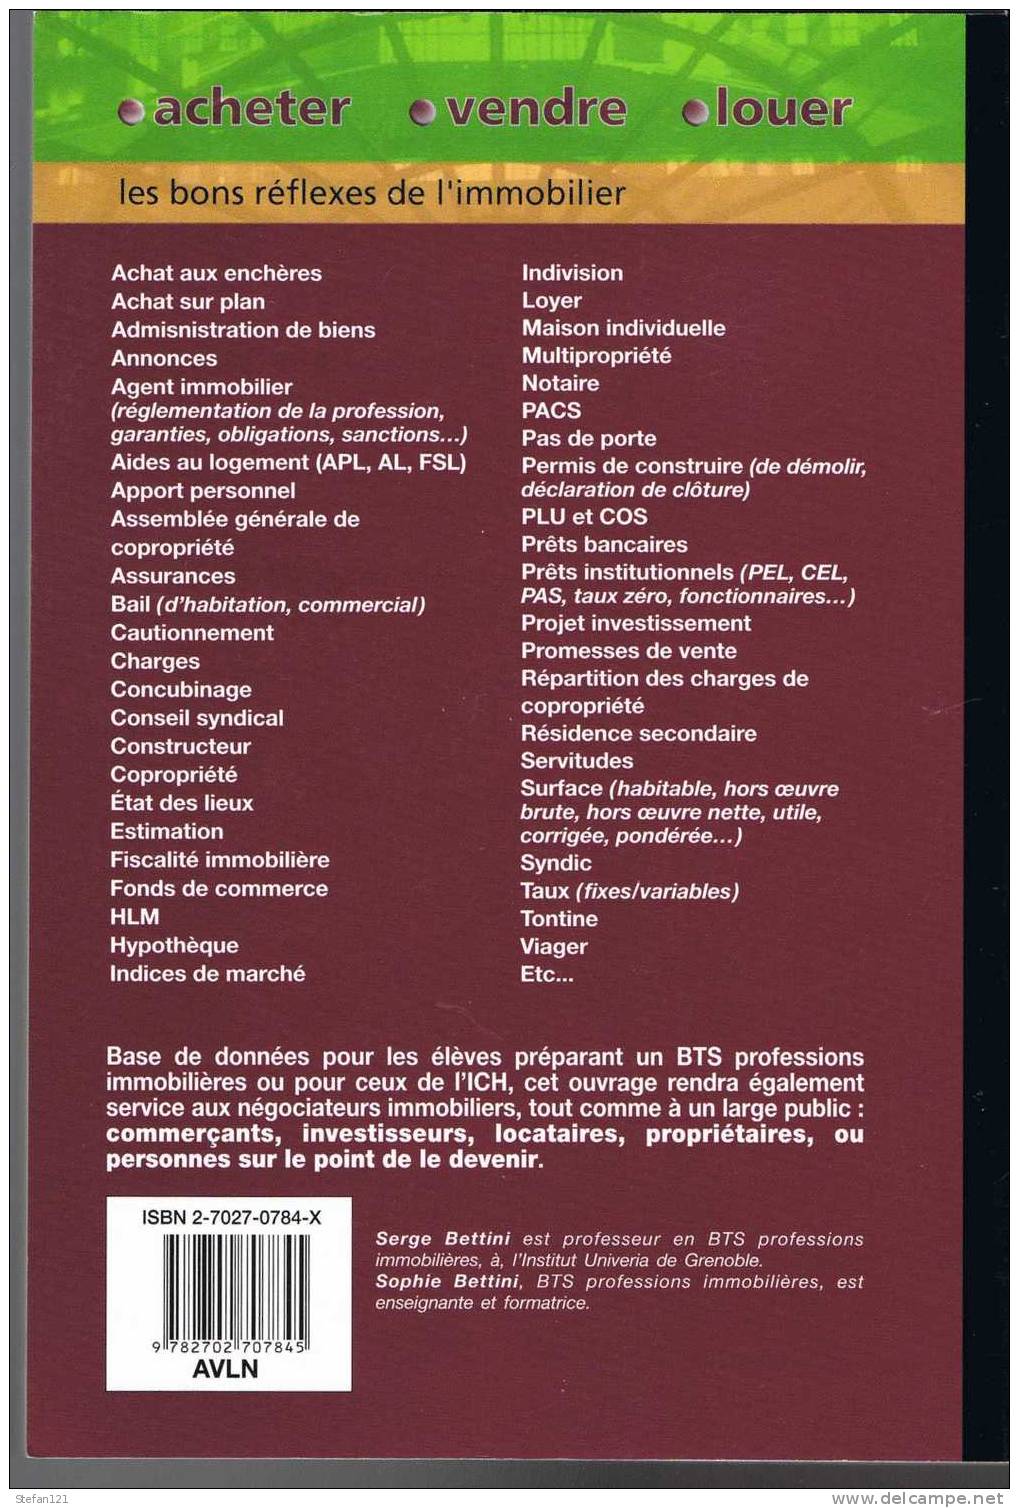 Acheter, Vendre, Louer - Sophie Et Serge Bettini - 2003 - Editeur Chiron - 288 Pages - 24 Cm X 17 Cm -- - Recht